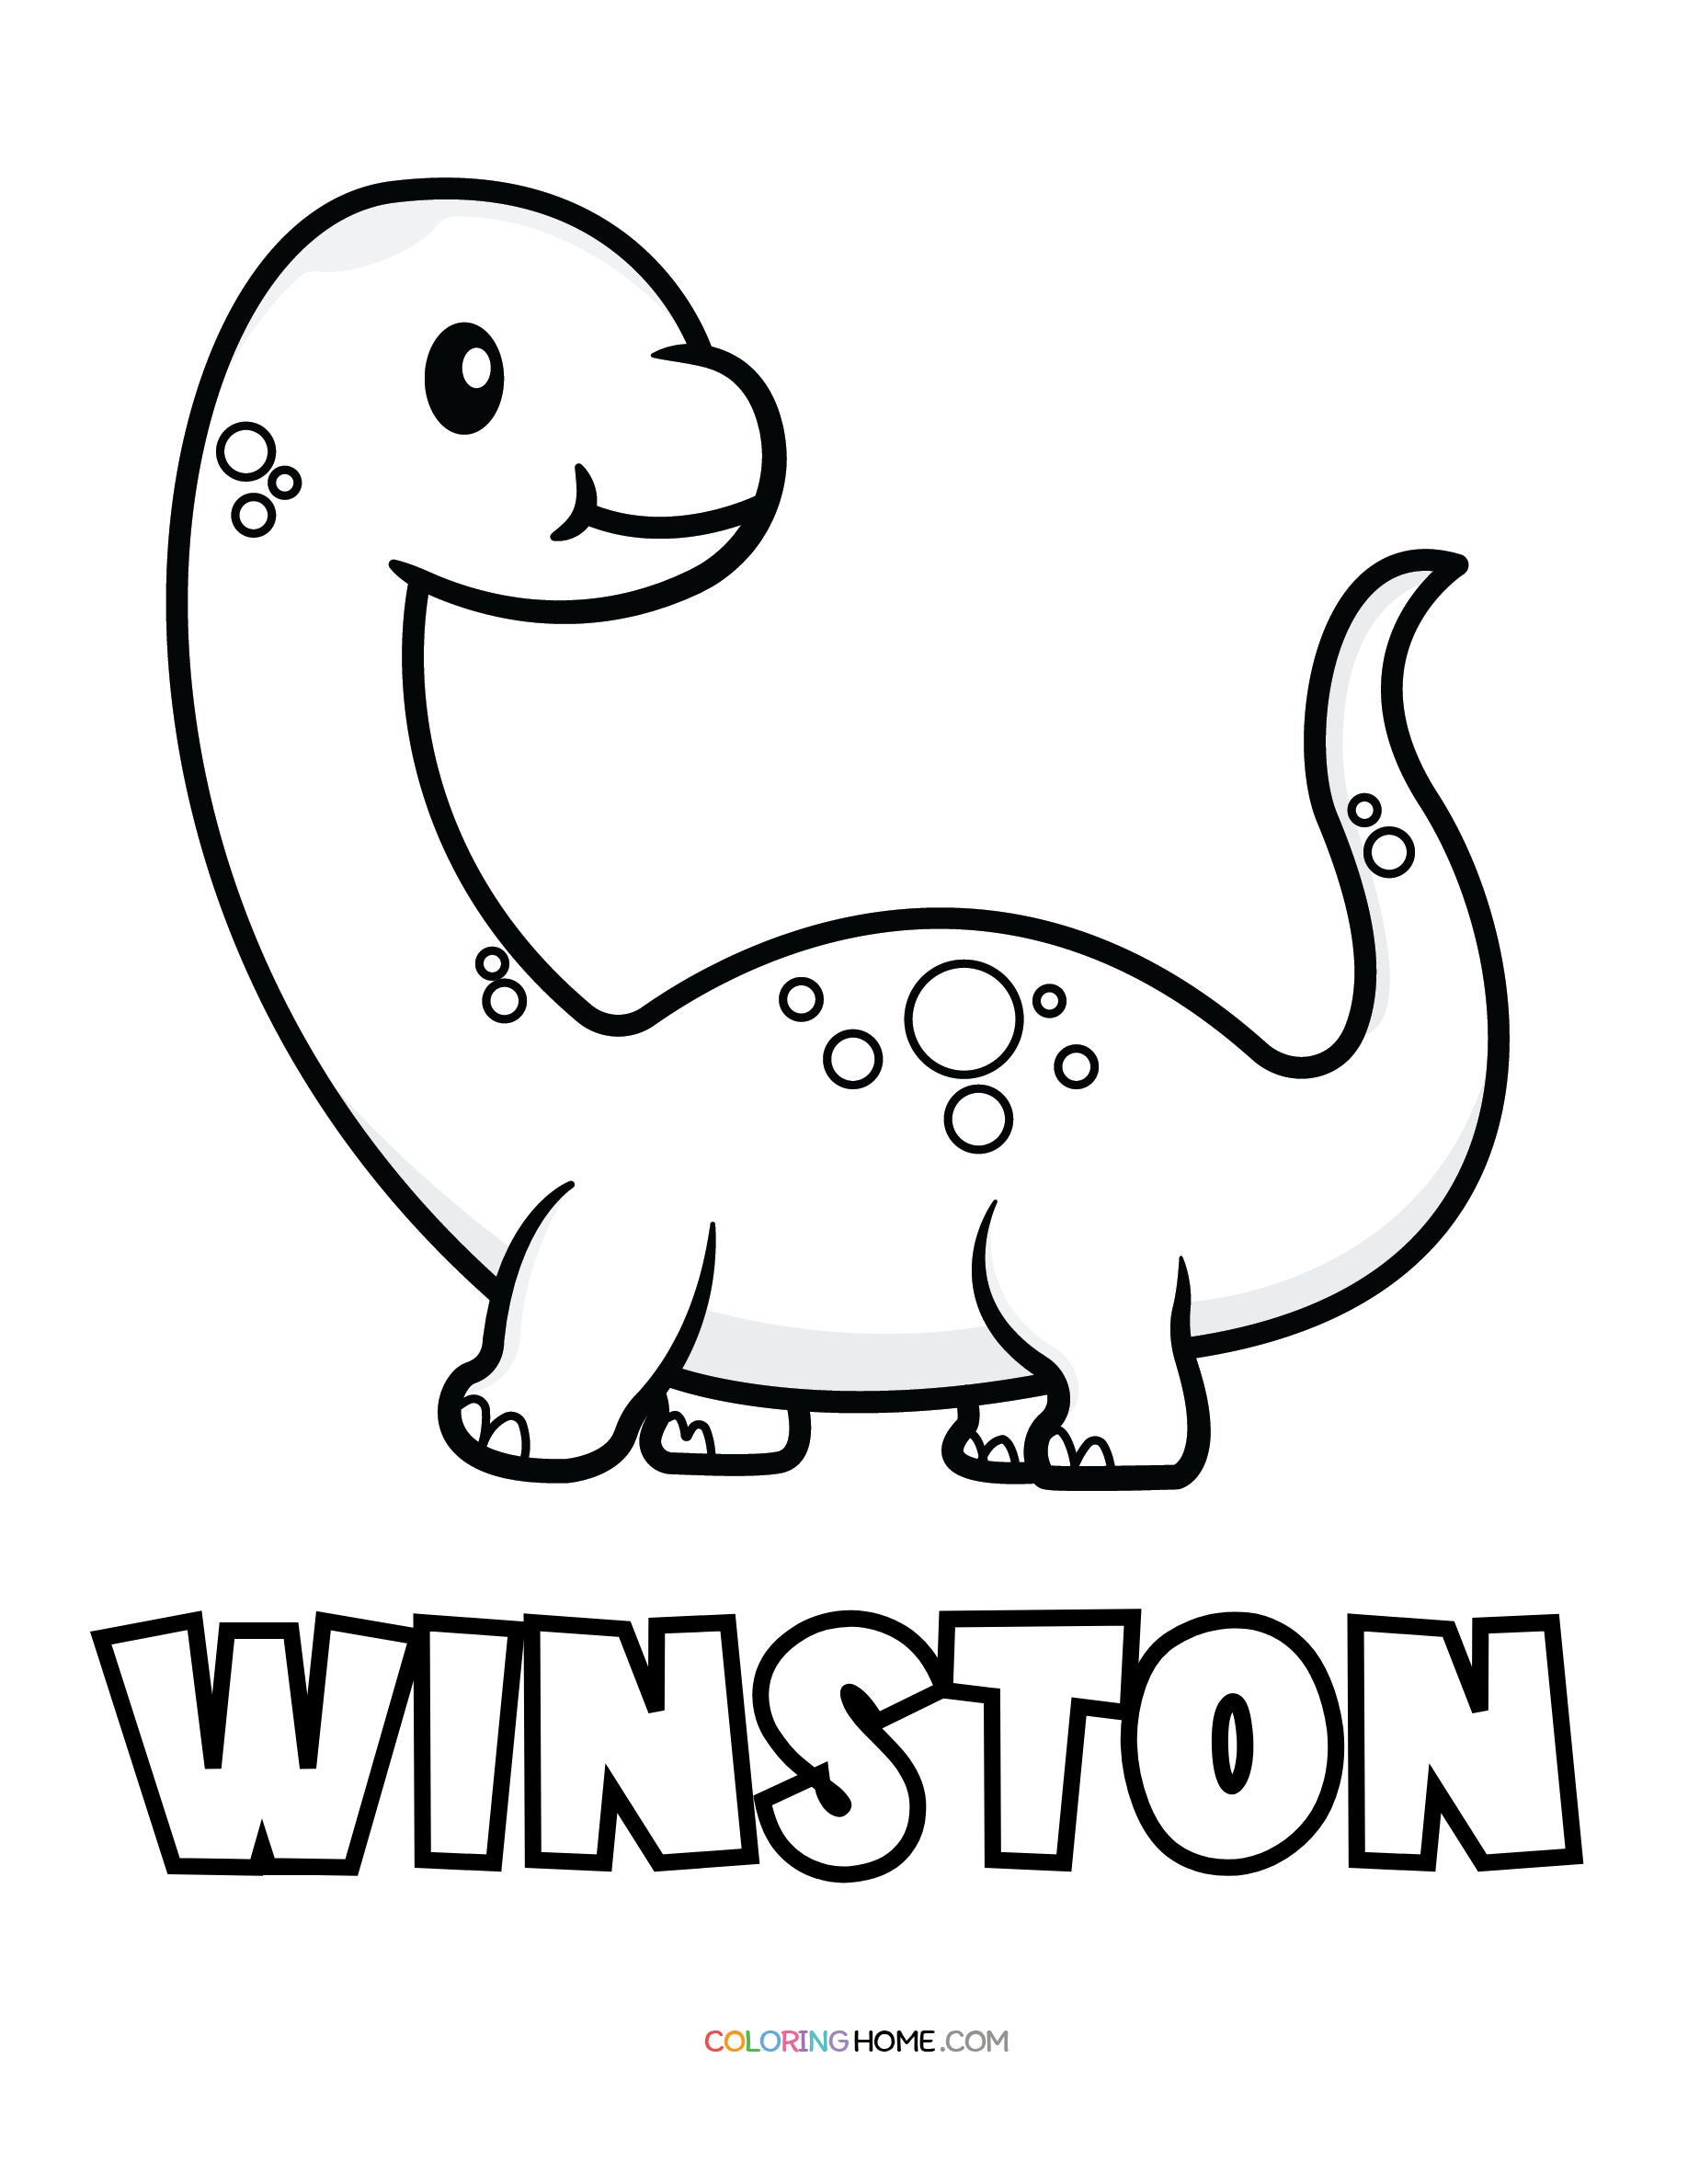 Winston dinosaur coloring page